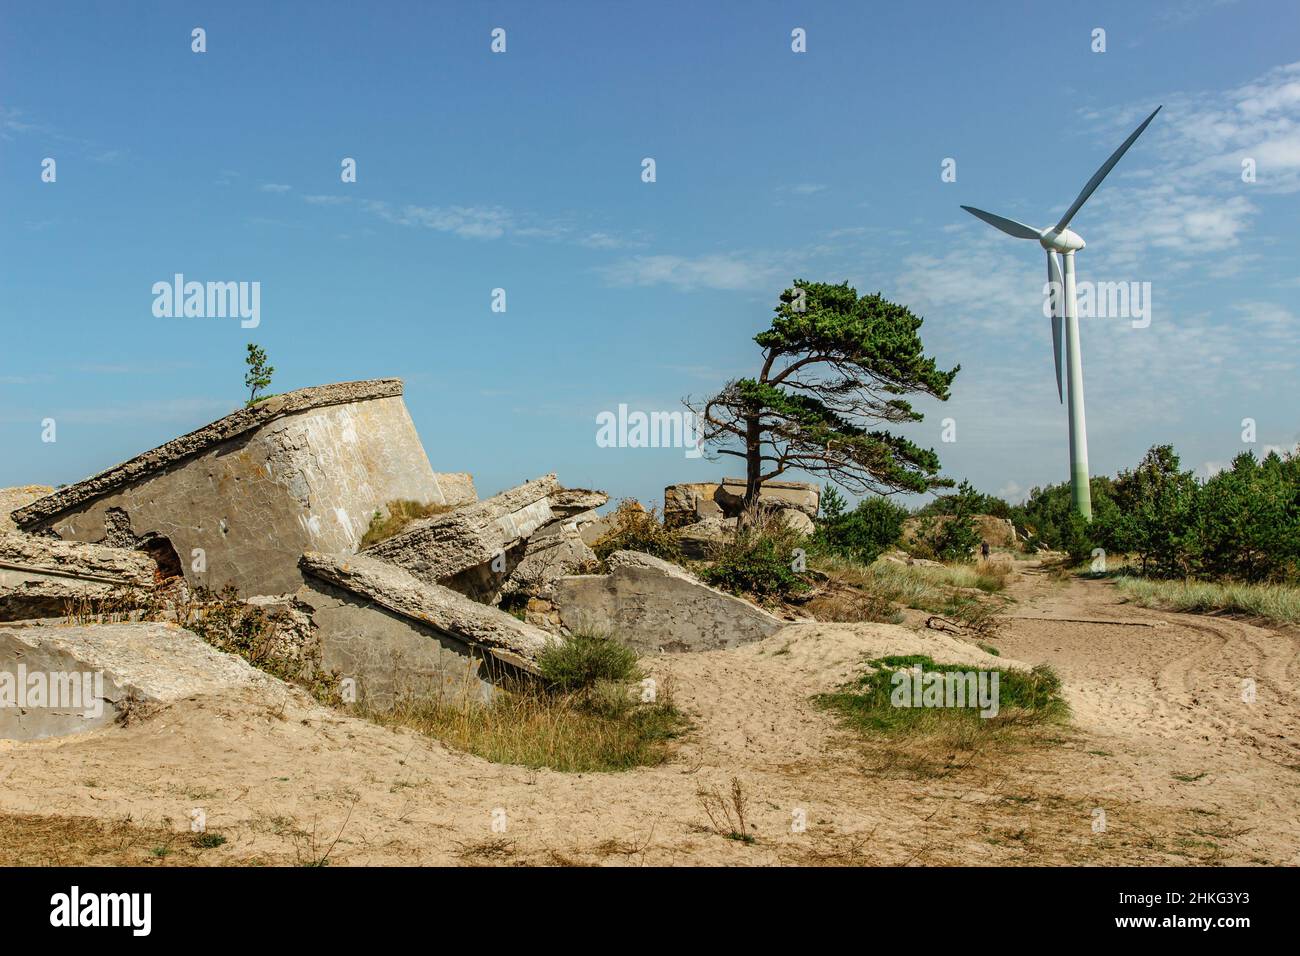 Ruinas de fortificaciones y molinos de viento en la zona de Karosta y Liepaja, Letonia. Territorio militar durante años de ocupación soviética en la costa del Mar Báltico Foto de stock